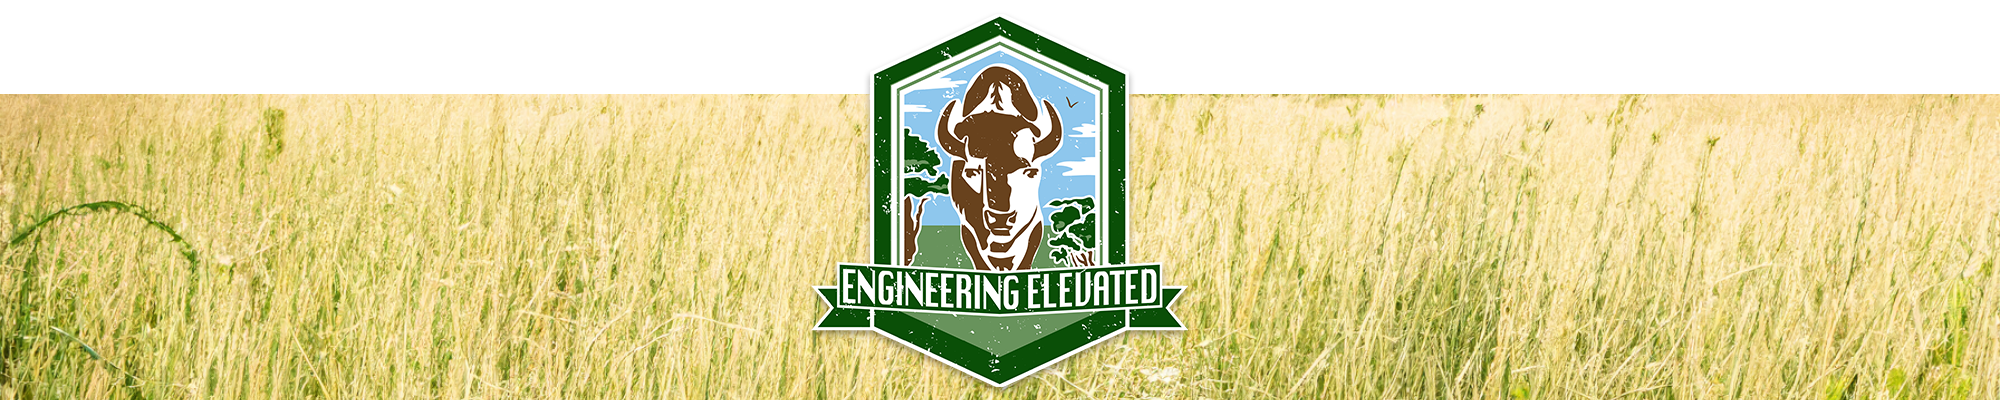 Engineering Open House logo over grassy field. Slogan: Engineering Elevated. Engineers' Week 2024, February 19-23.